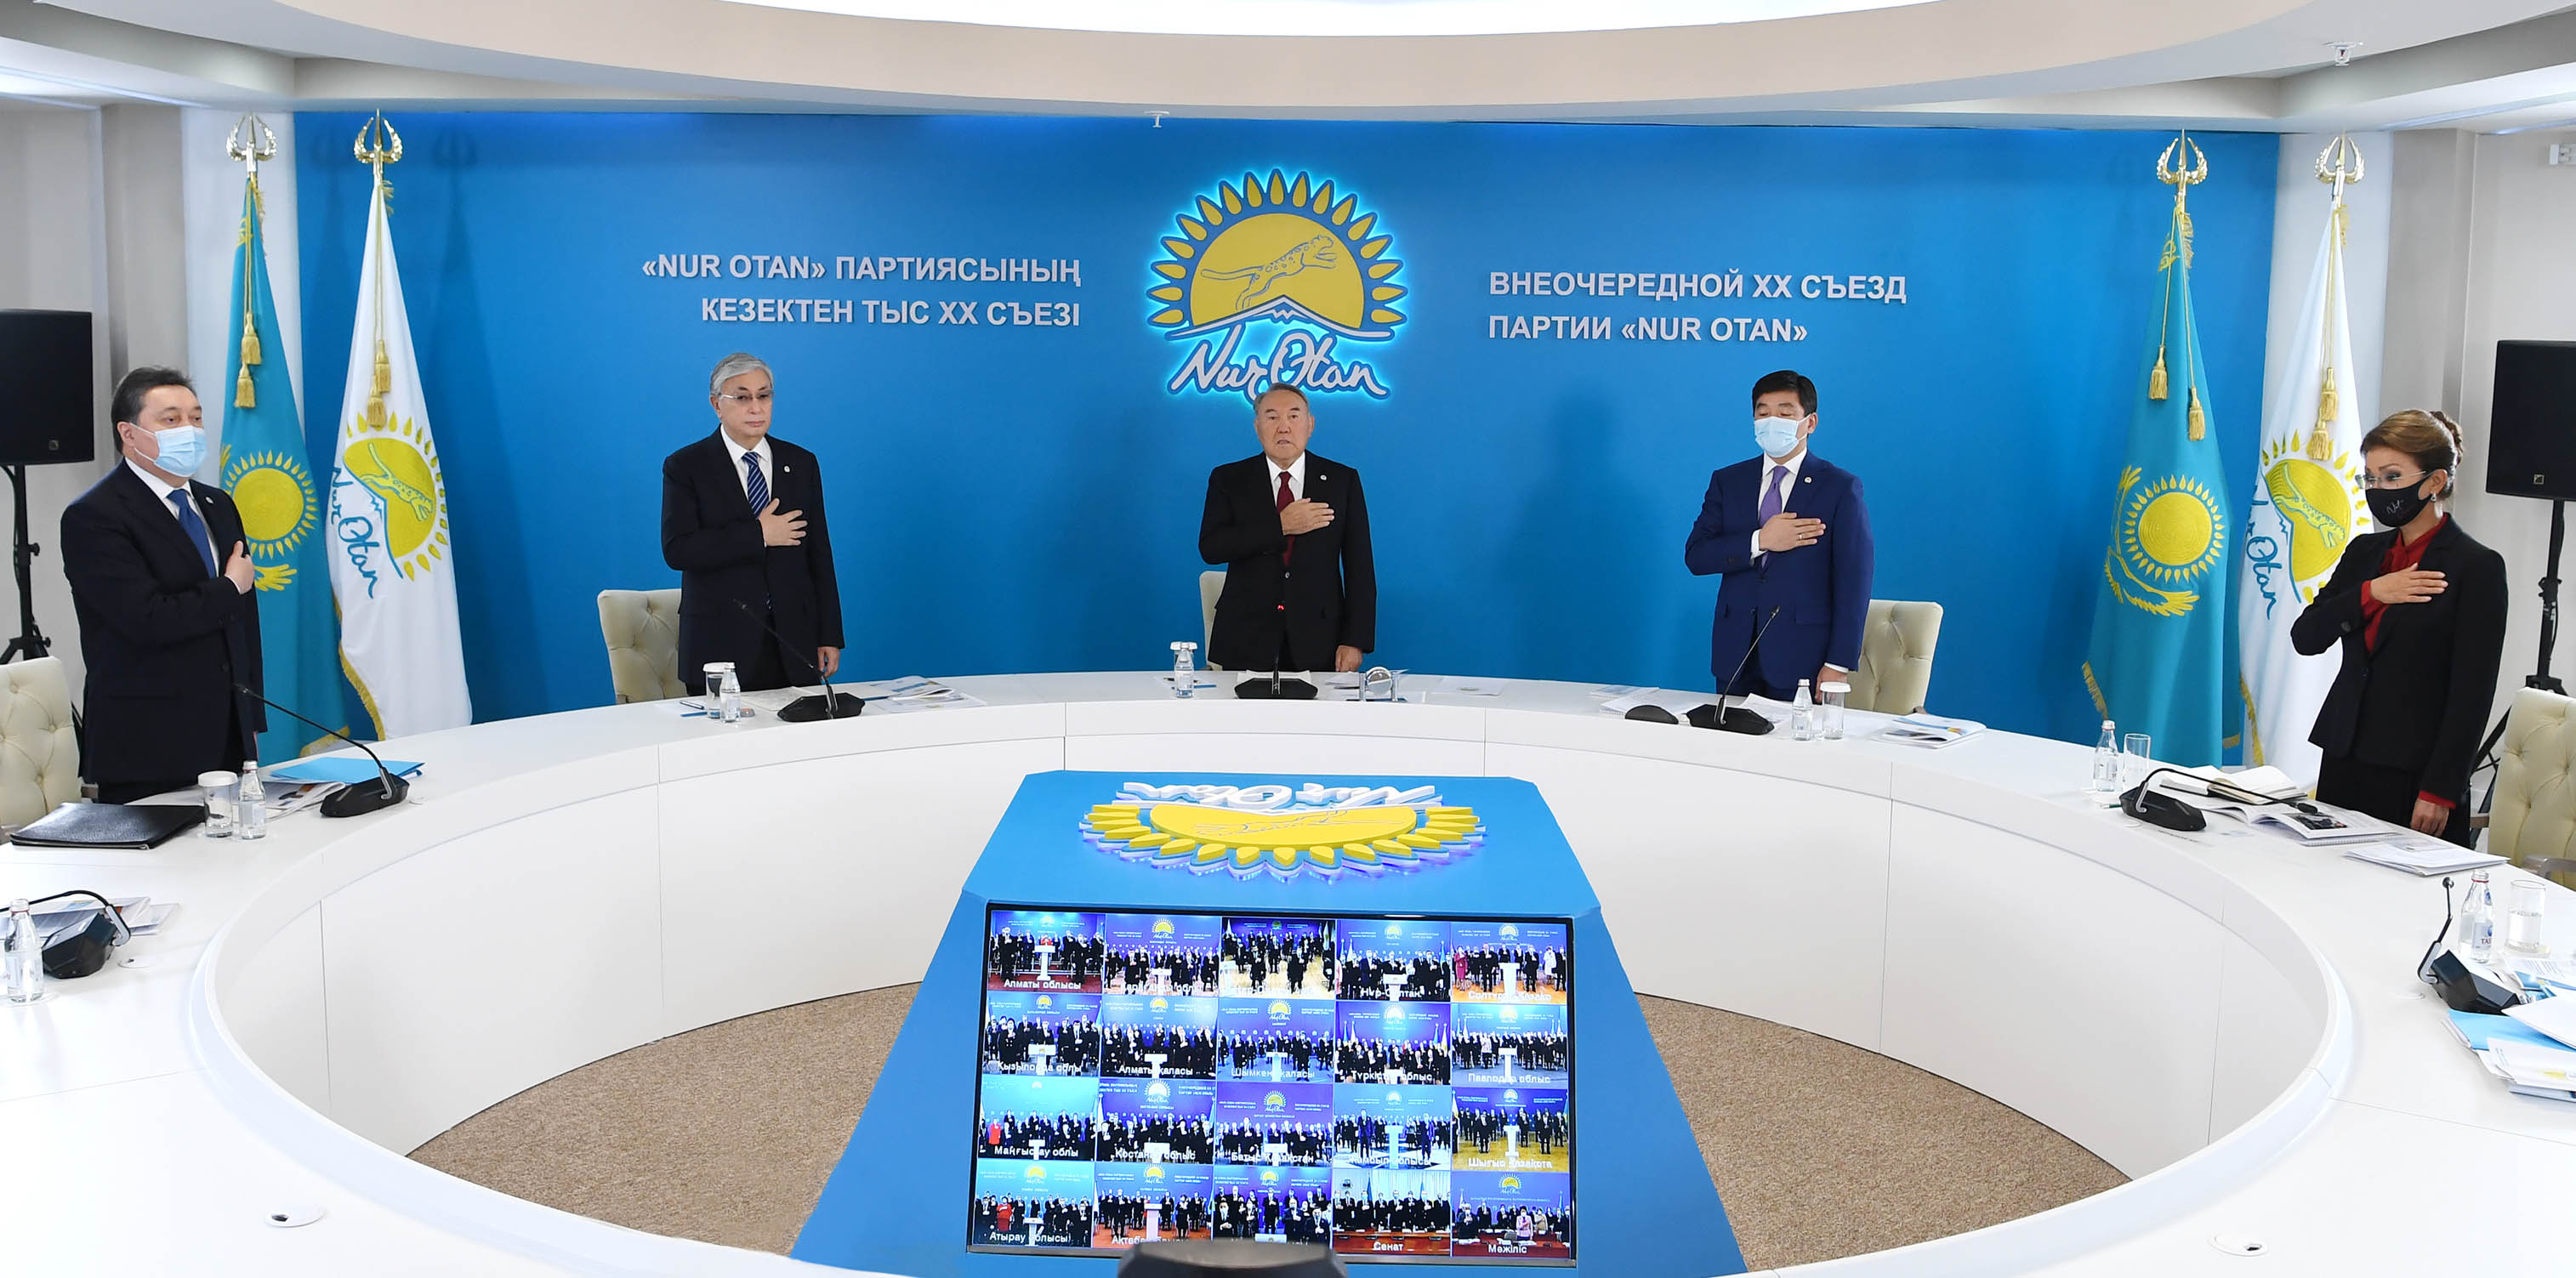 Нұрсұлтан Назарбаевтың төрағалығымен «Nur Otan» партиясының кезектен тыс ХХ съезі өтті